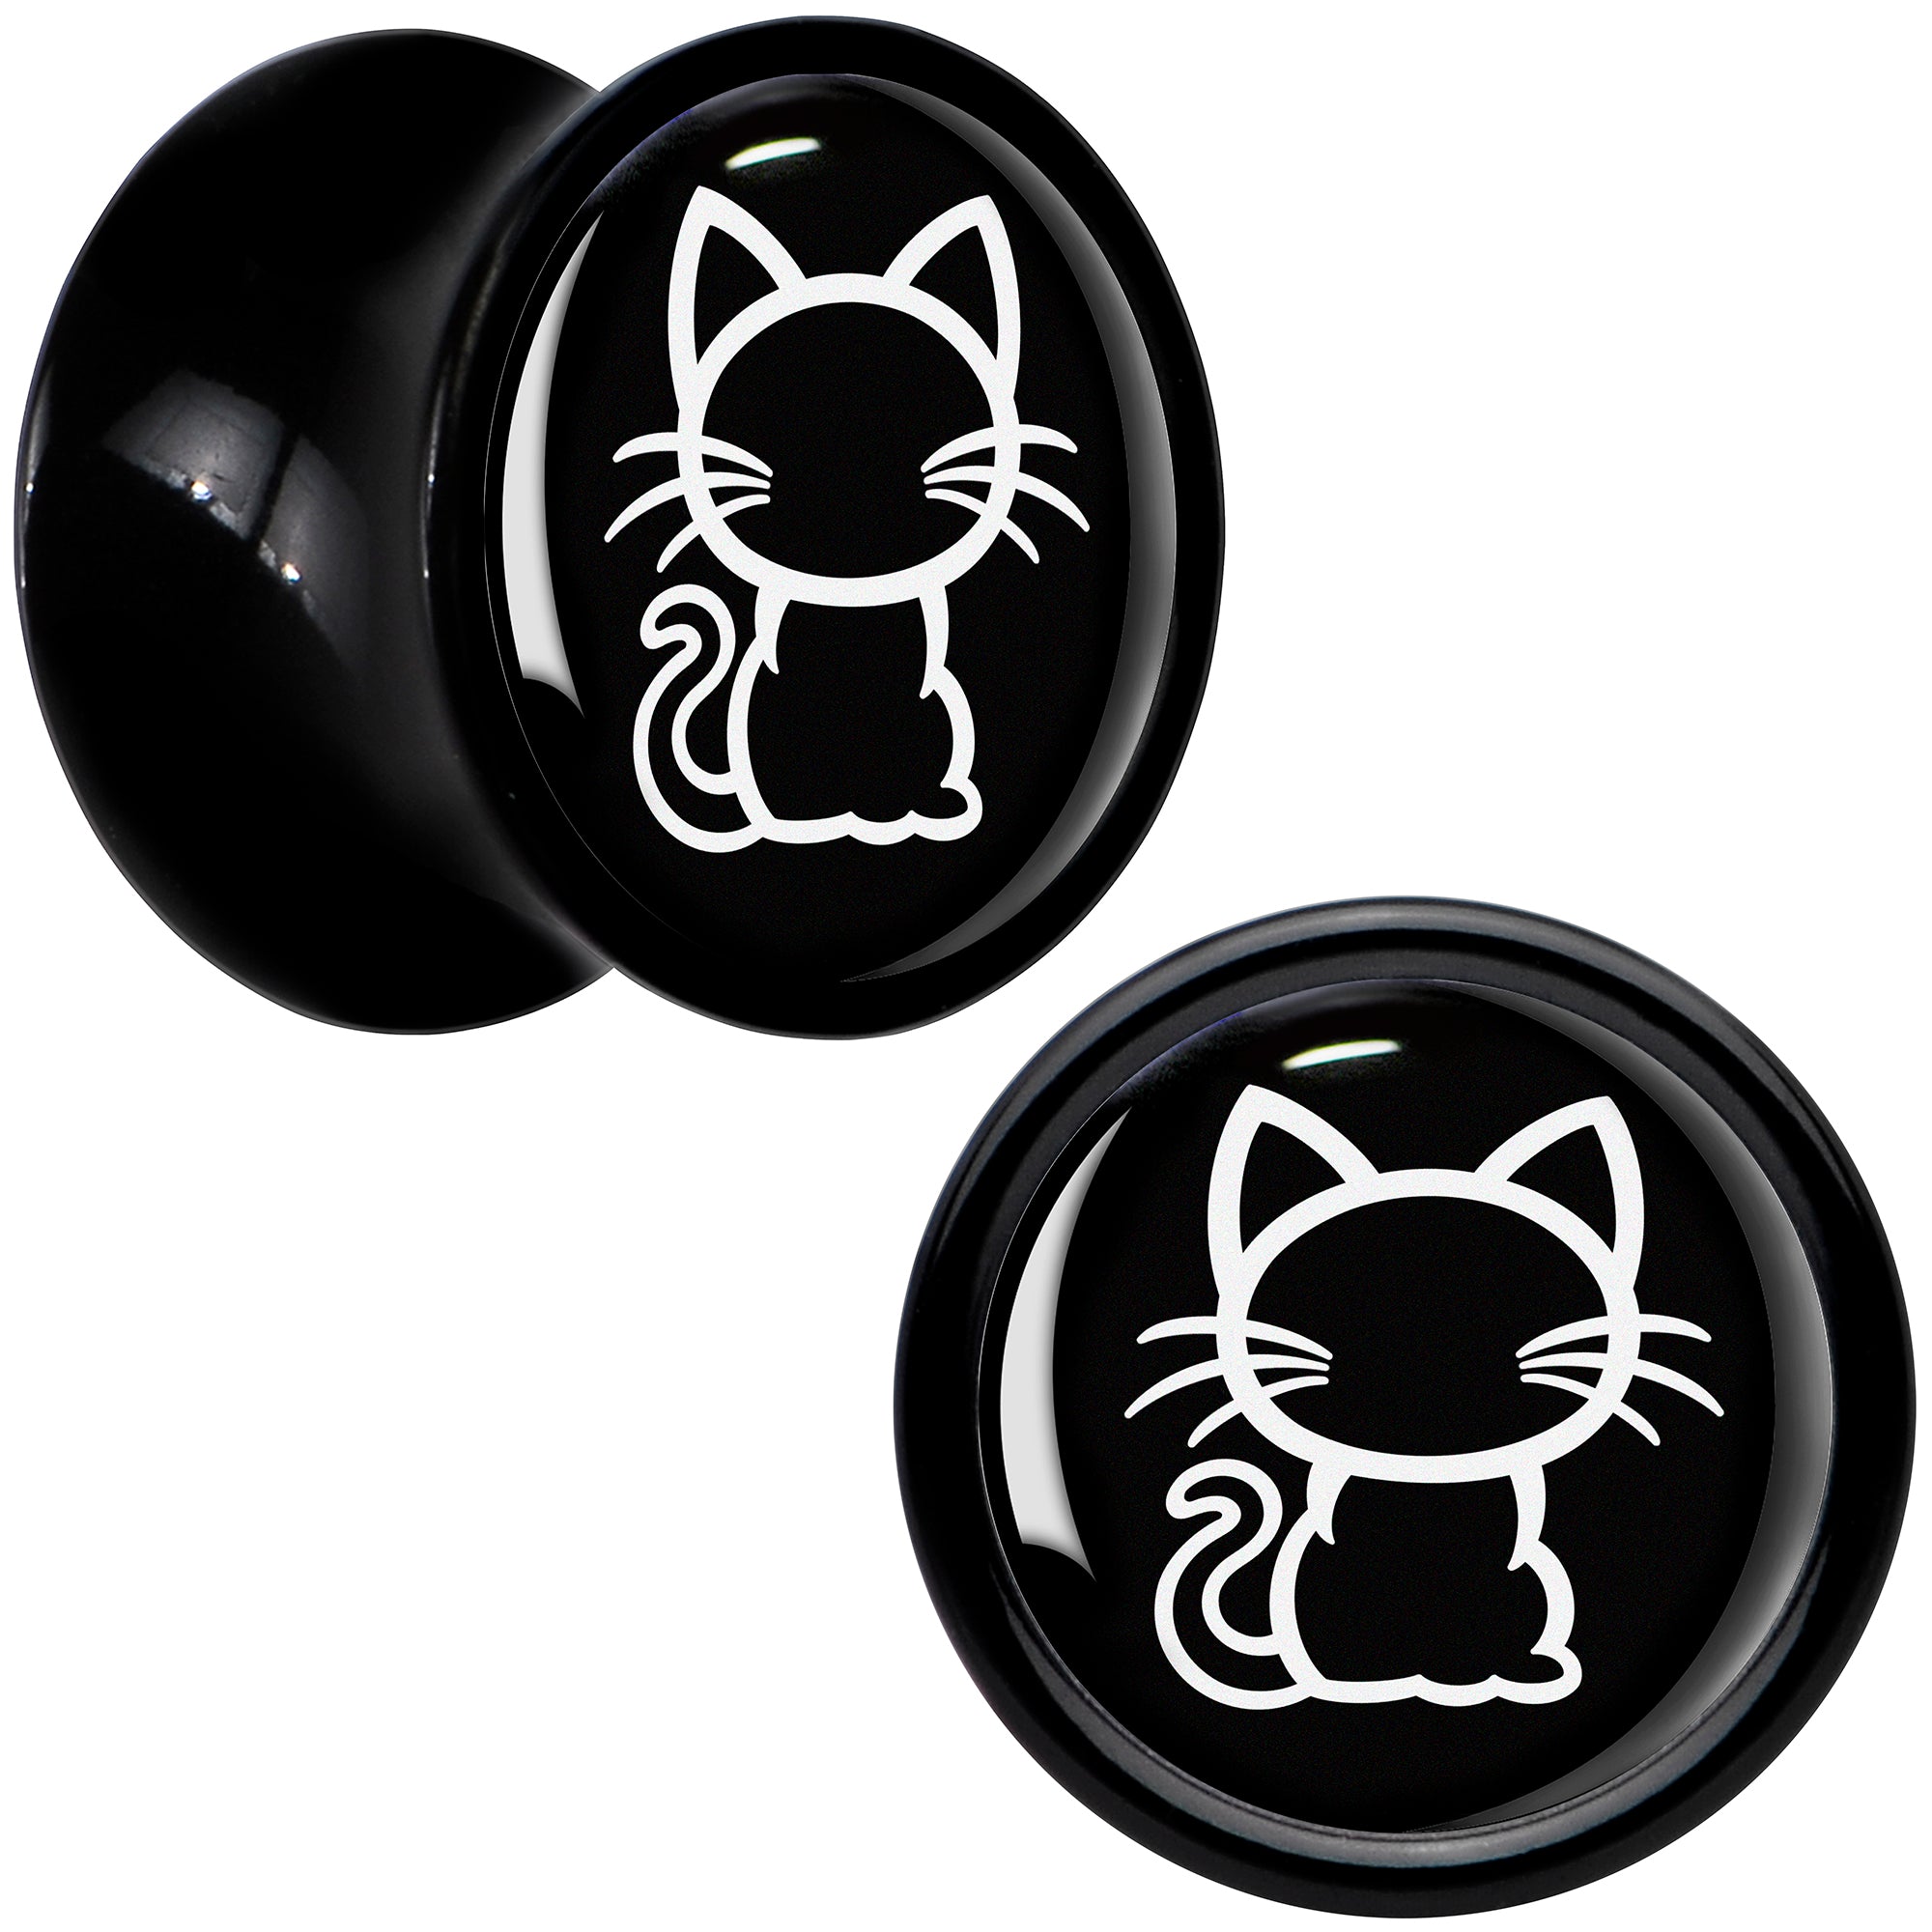 Black and White Kitty Cat Black Acrylic Saddle Plug Set 8mm to 20mm